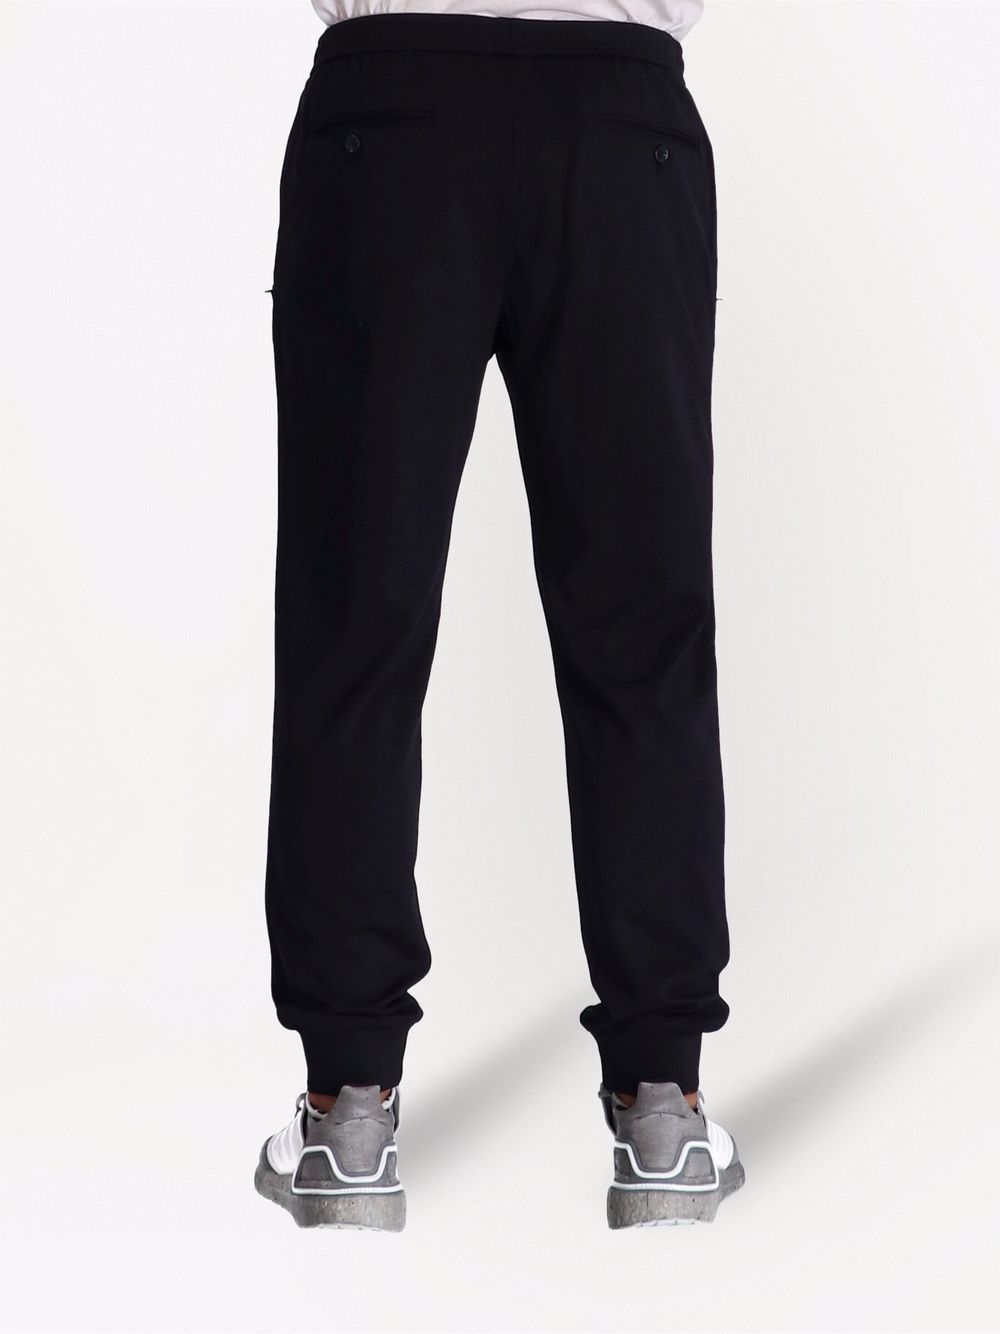 фото Armani exchange спортивные брюки с эластичным поясом